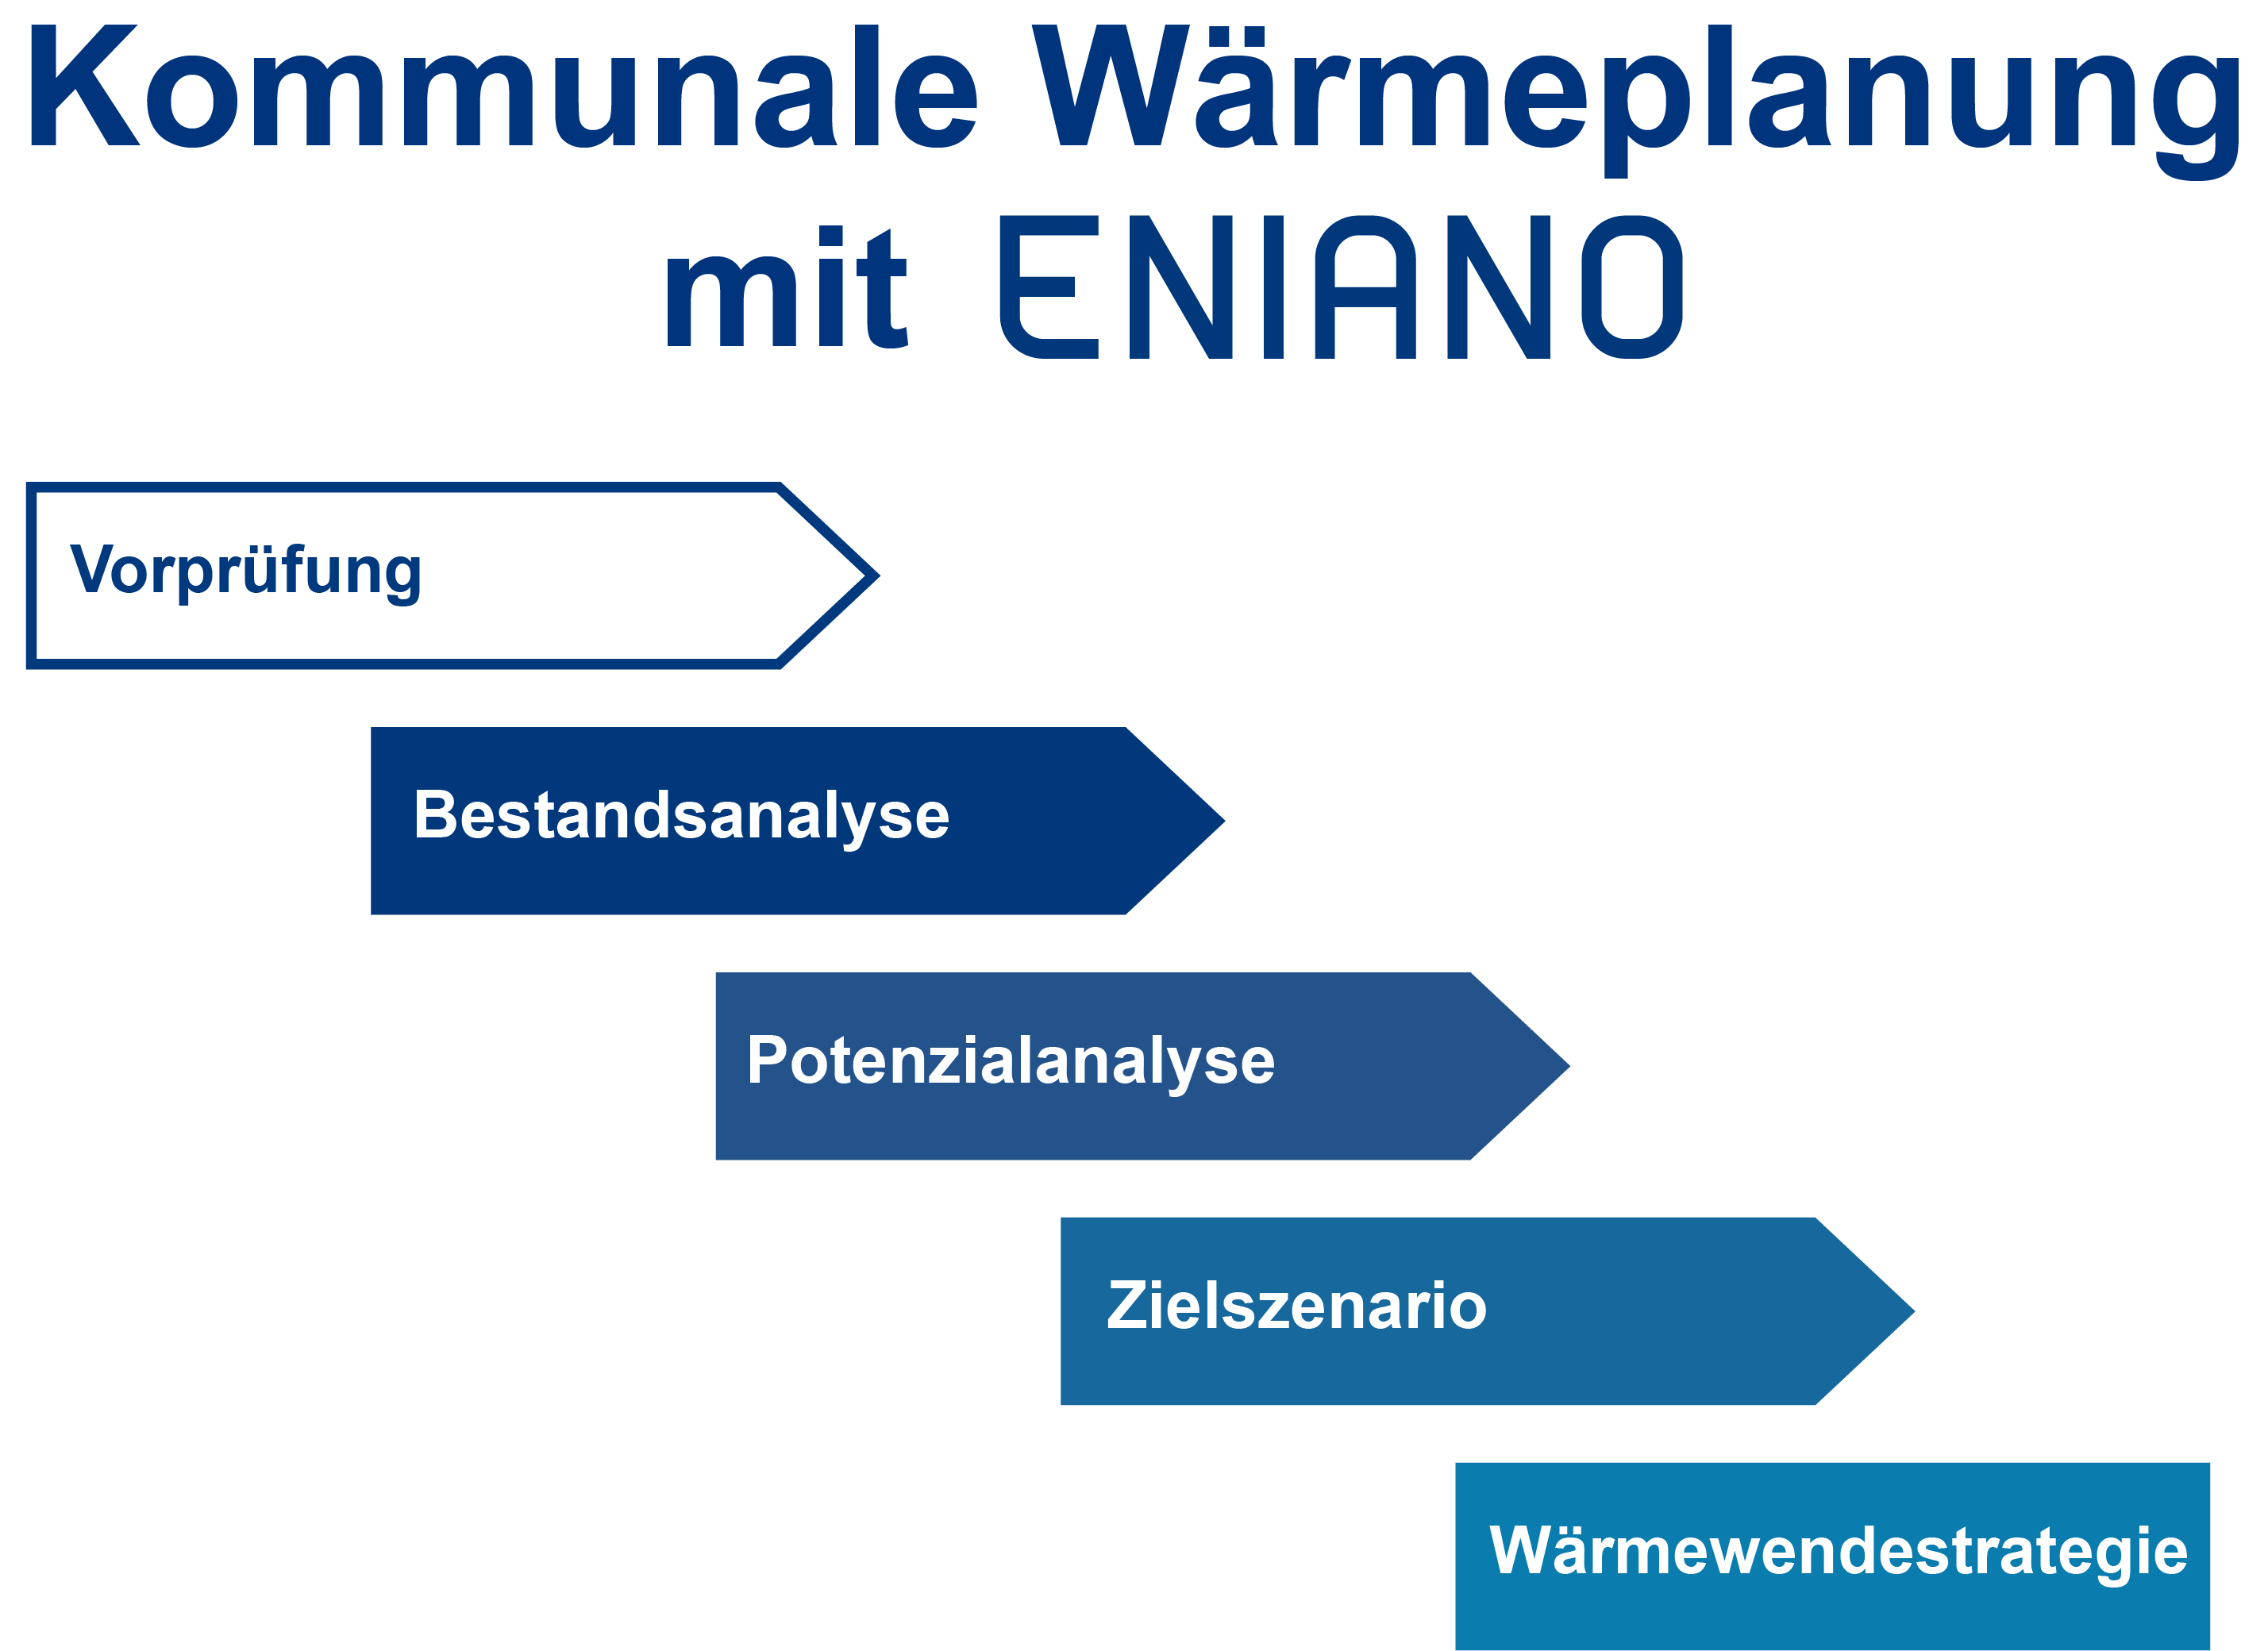 Wärmeplanung mit ENIANO - Vorprüfung, Bestandsanalyse, Potenzialanalyse, Zielszenario, Wärmewendestrategie